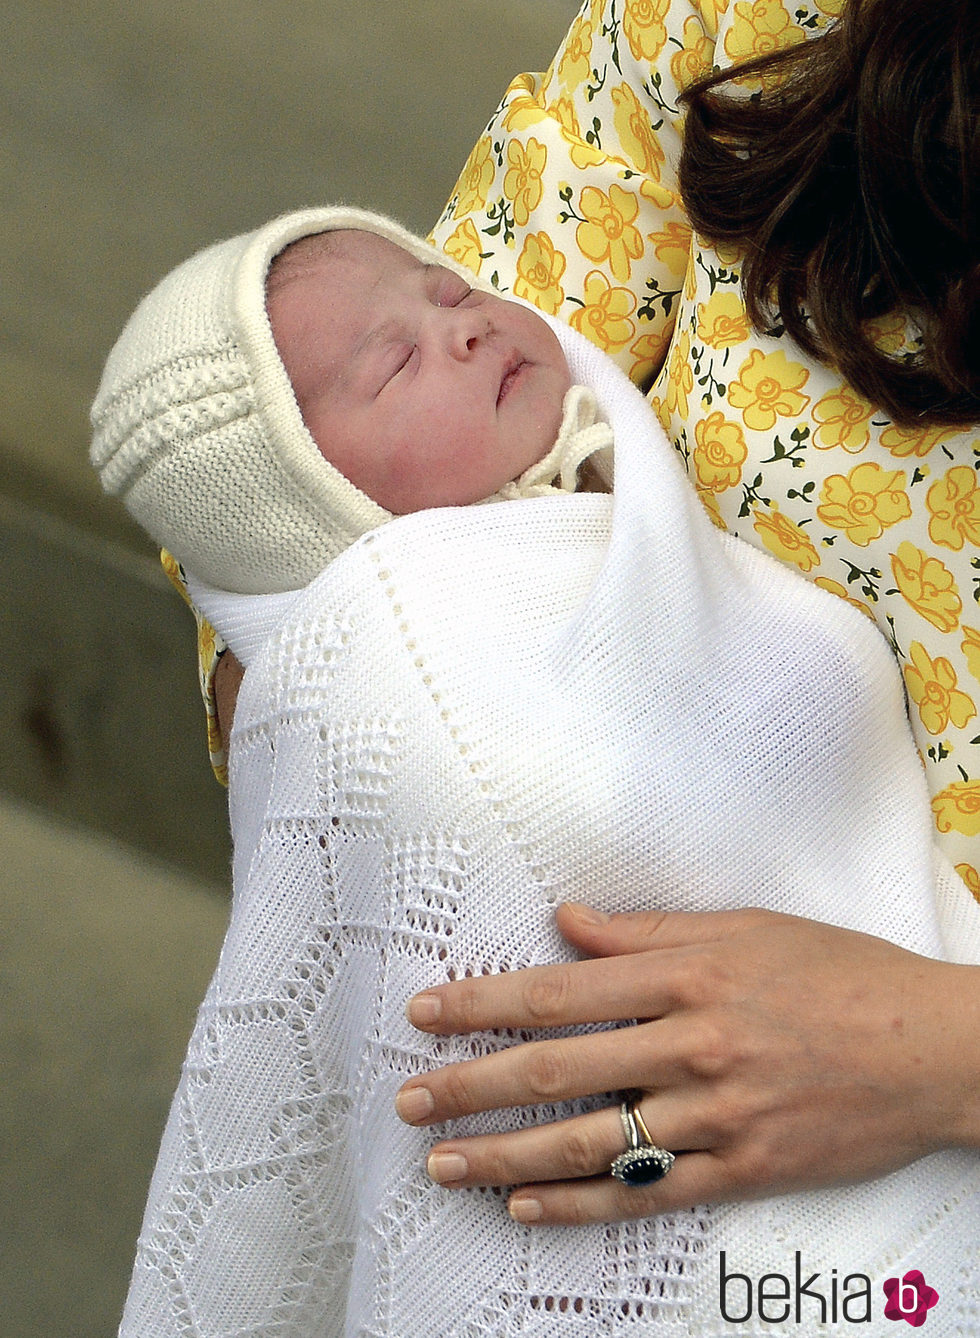 La Princesa Carlota de Cambridge en su primera imagen tras su nacimiento